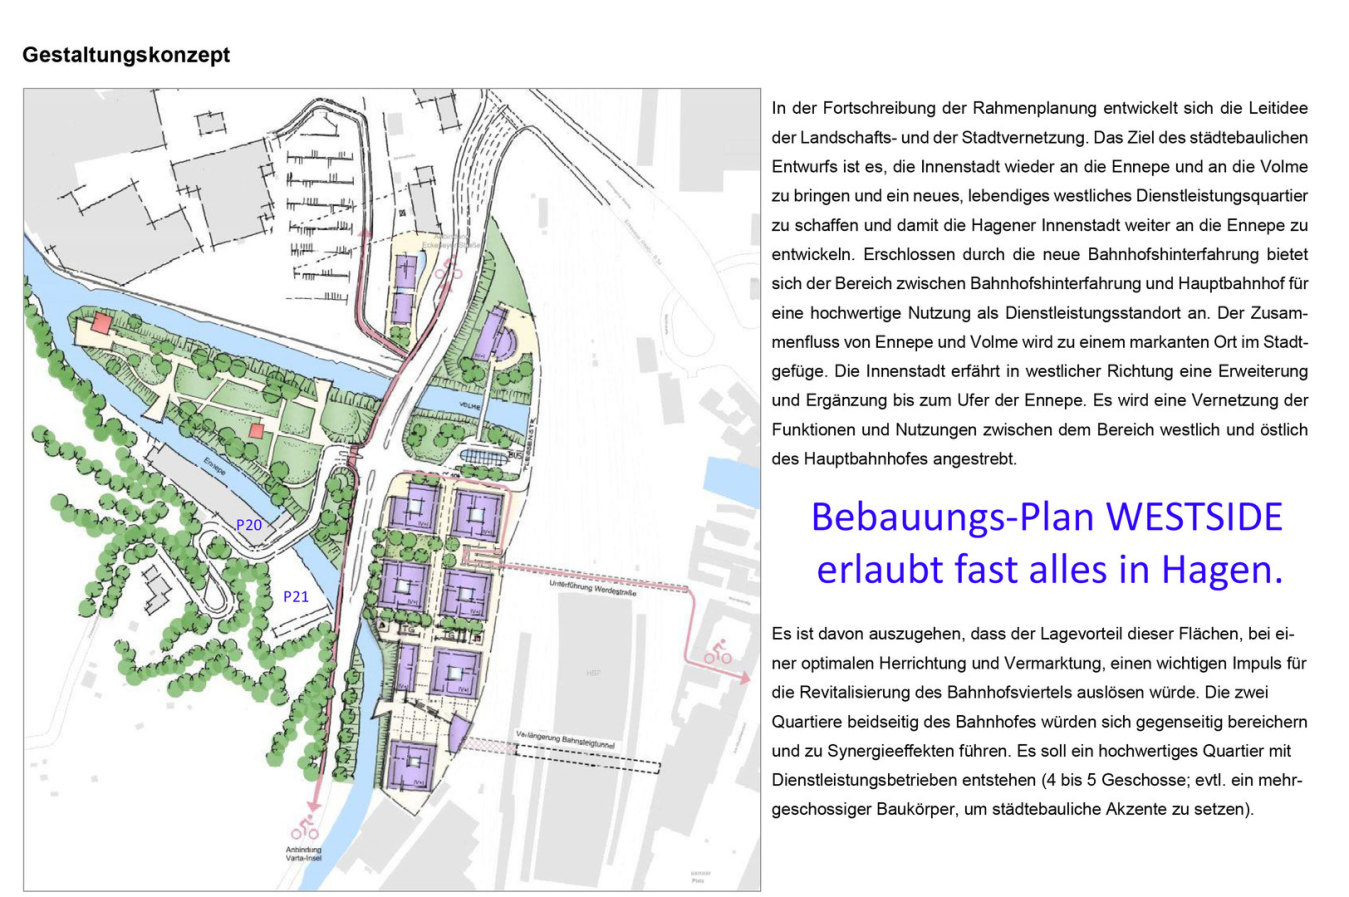 Bauland NRW Hagen WESTSIDE direkt am Hauptbahnhof - Fast alles ist möglich ...